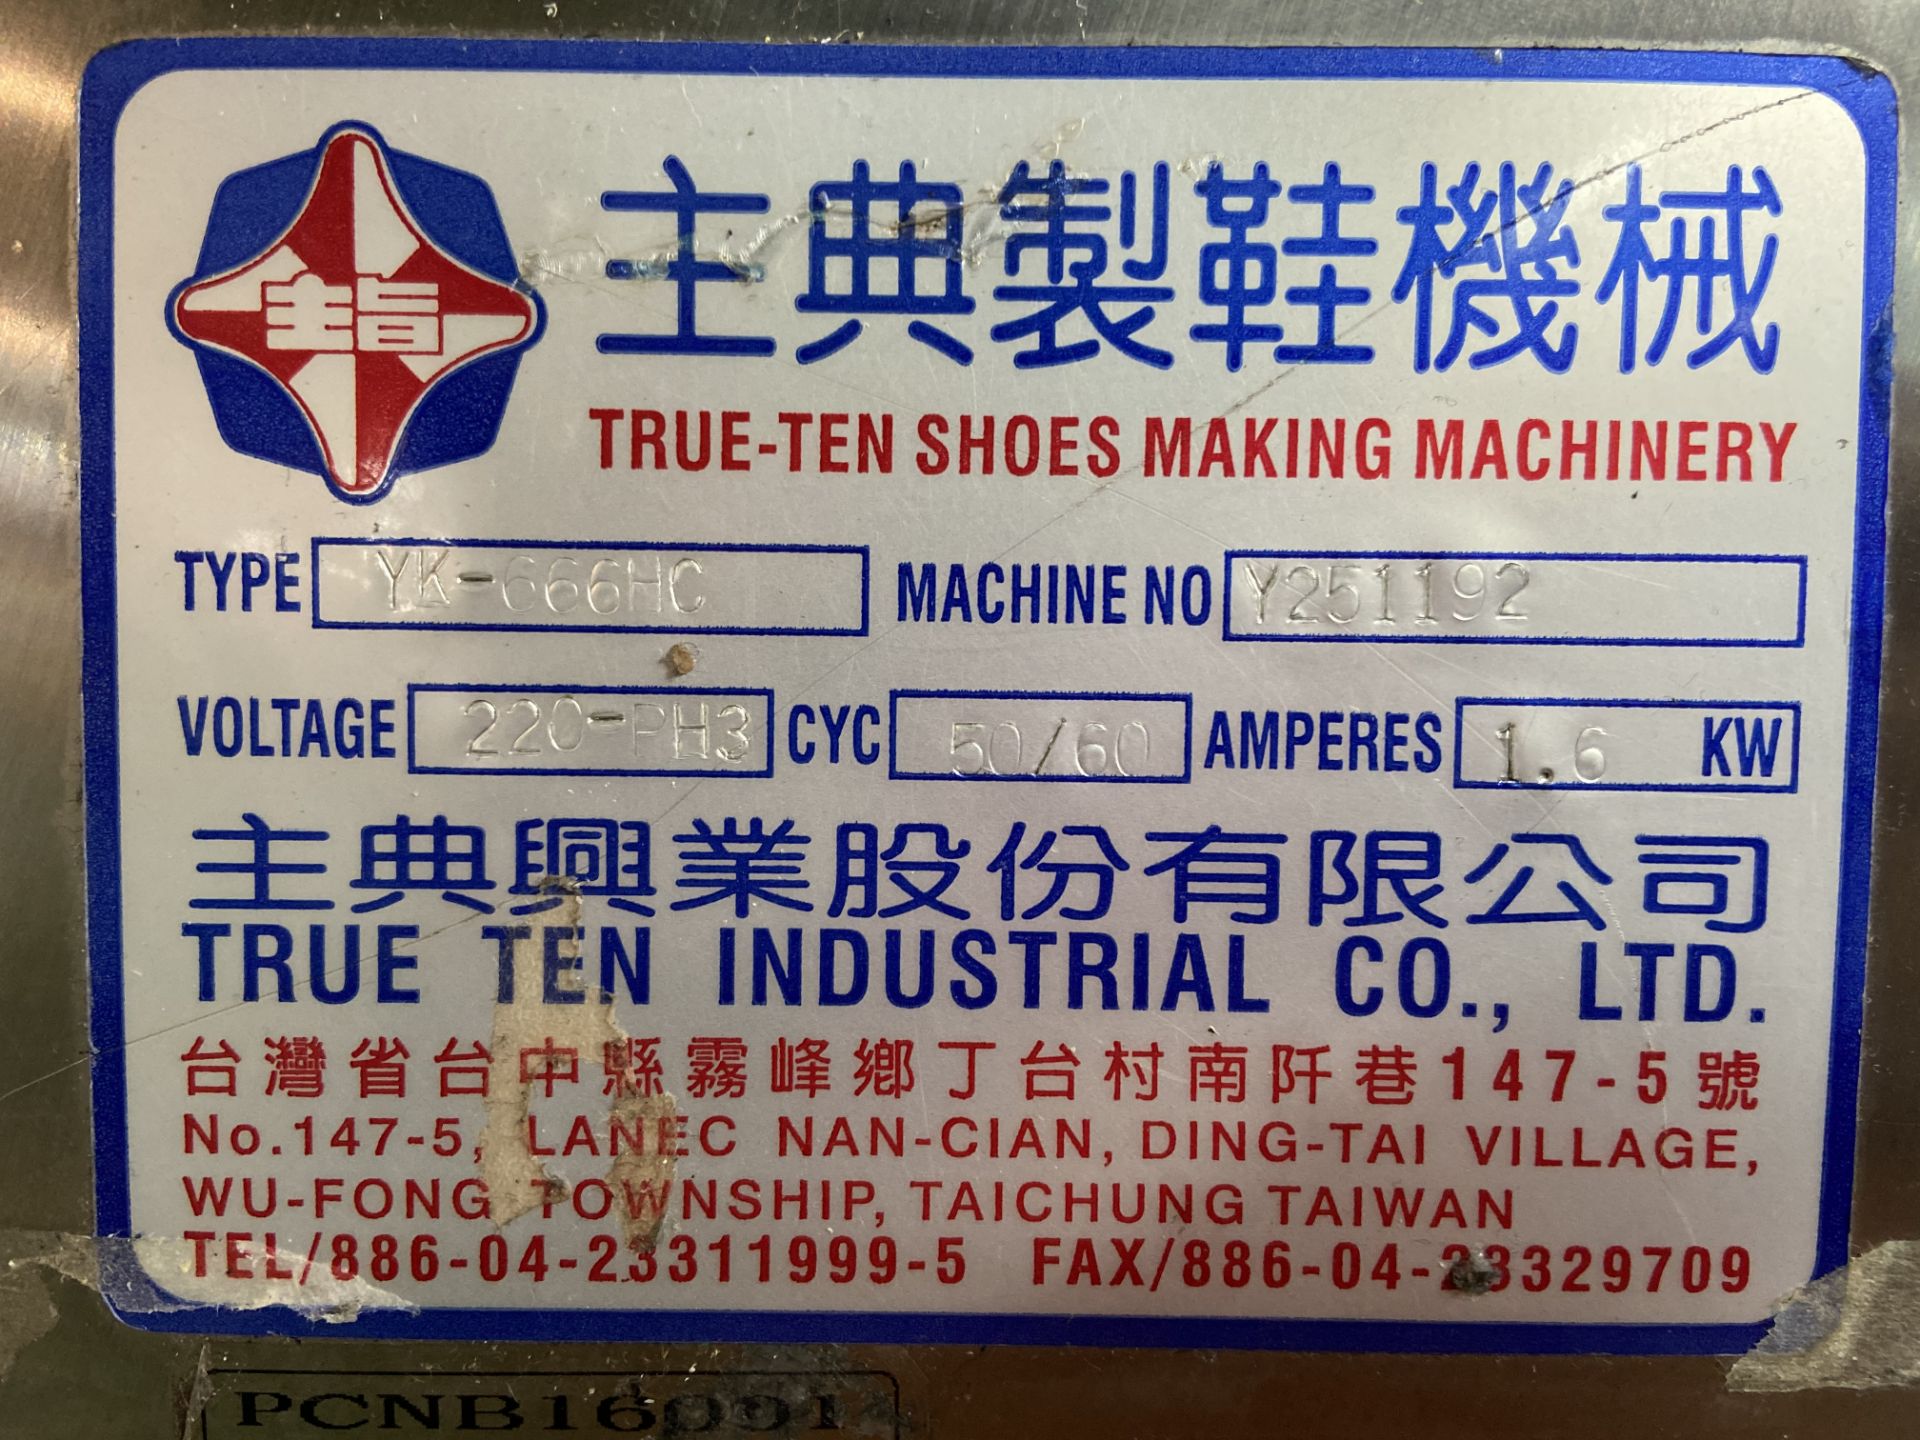 Prensa para moldeado de talón caliente/frio marca True-Ten, Modelo: YK-666HC - Image 10 of 11